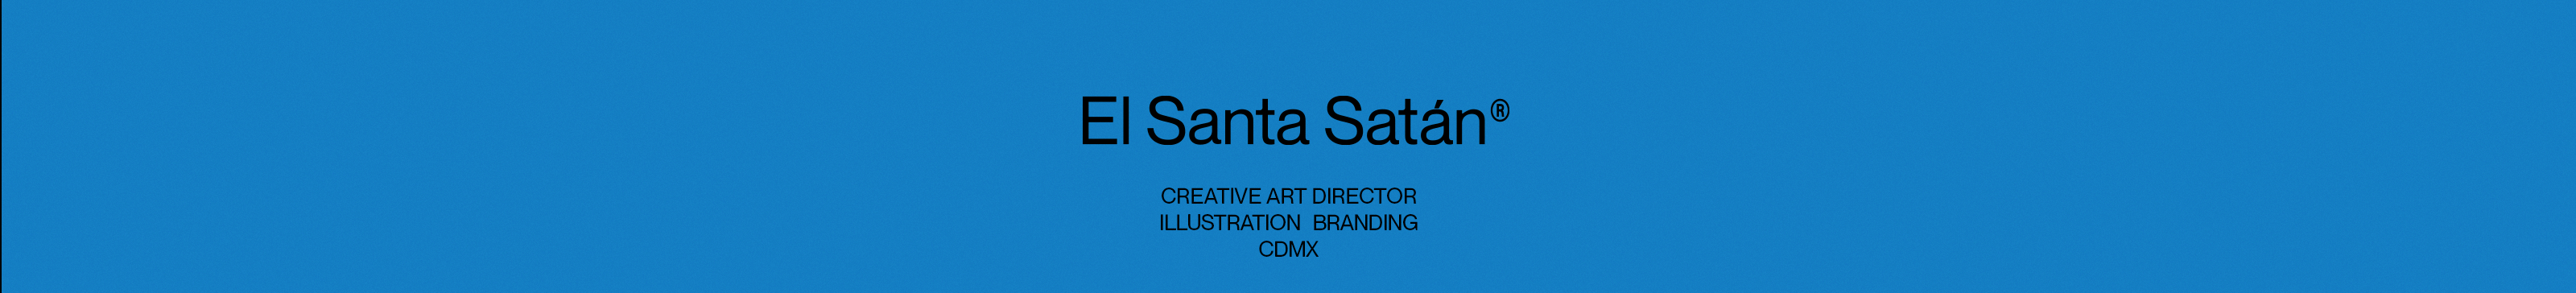 El Santa Satán's profile banner